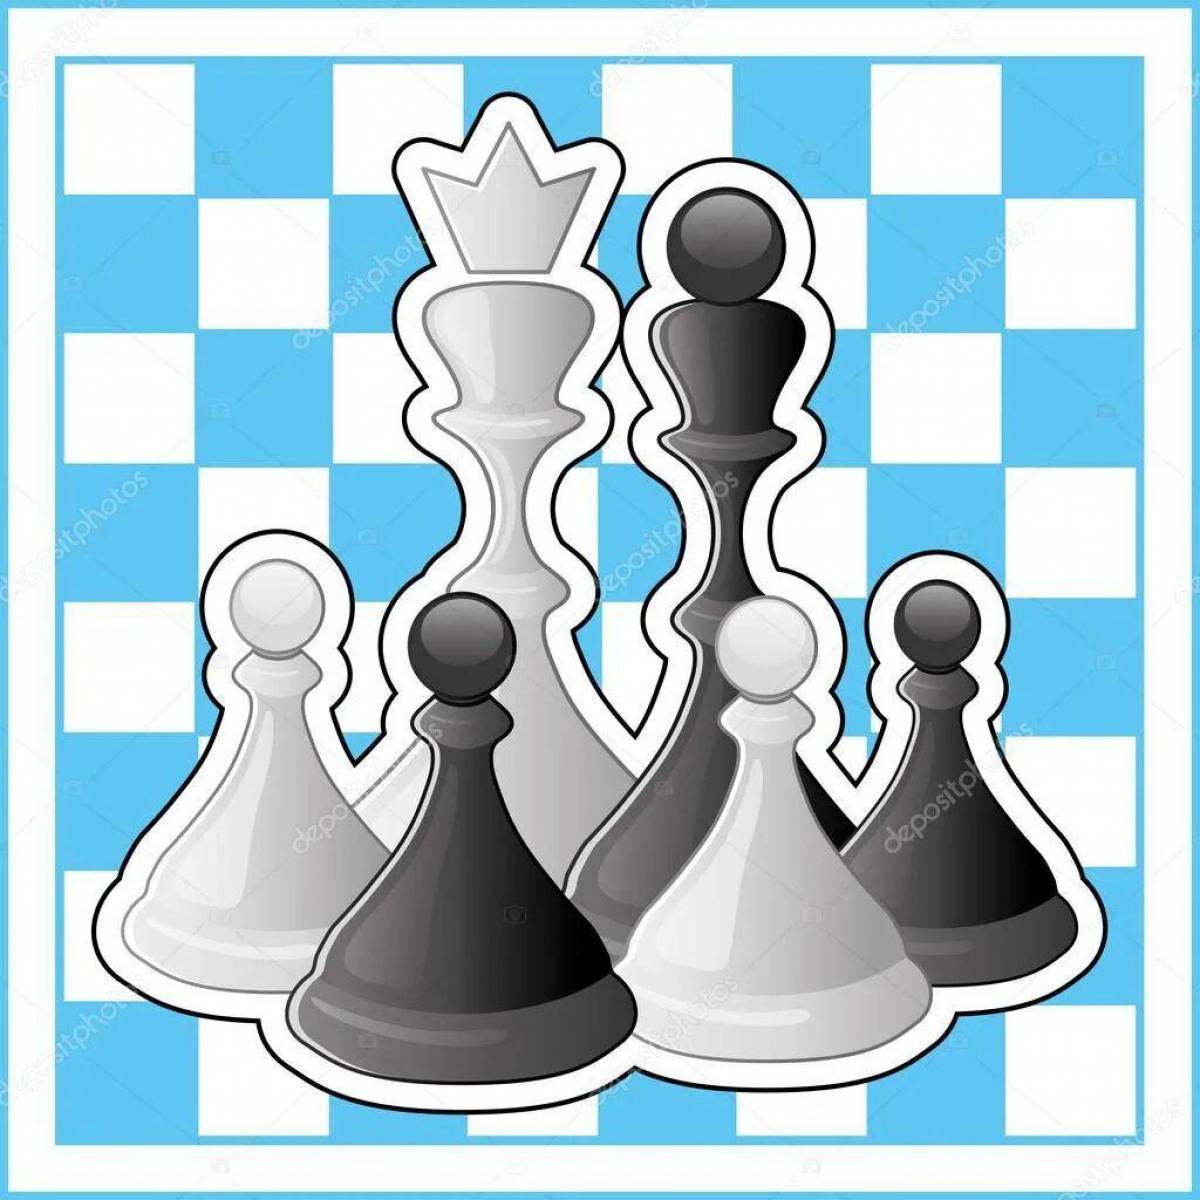 Шахматы для детей #2